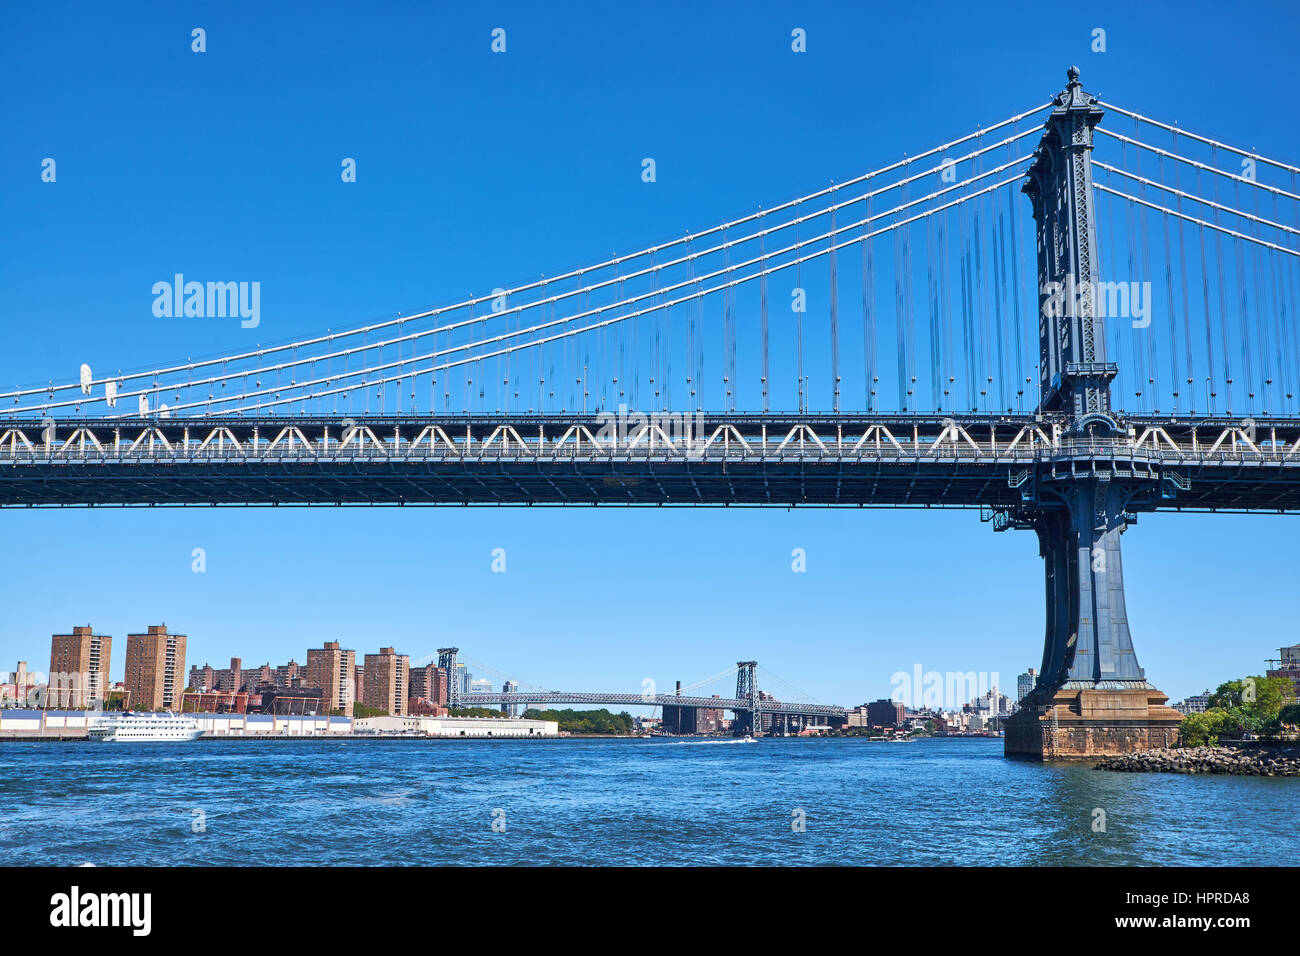 Traversée du Pont de Manhattan avec la rivière East Williamsburg Bridge en arrière-plan dans la ville de New York Banque D'Images